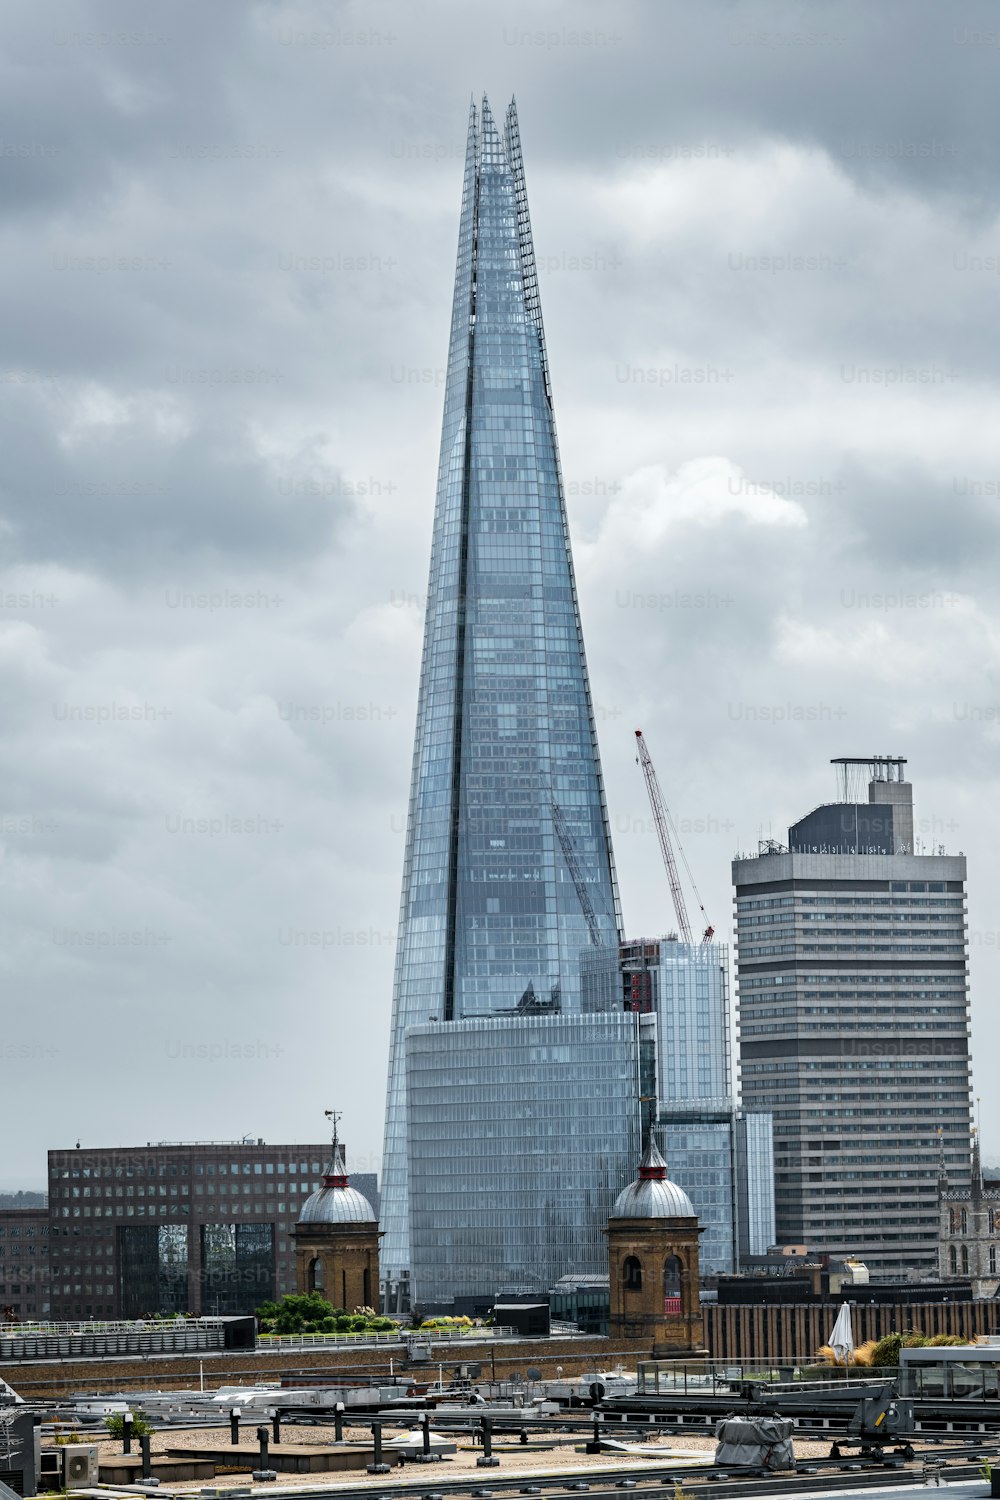 シャードを背景にしたロンドンの街並み、西ヨーロッパで最も高い超高層ビル。